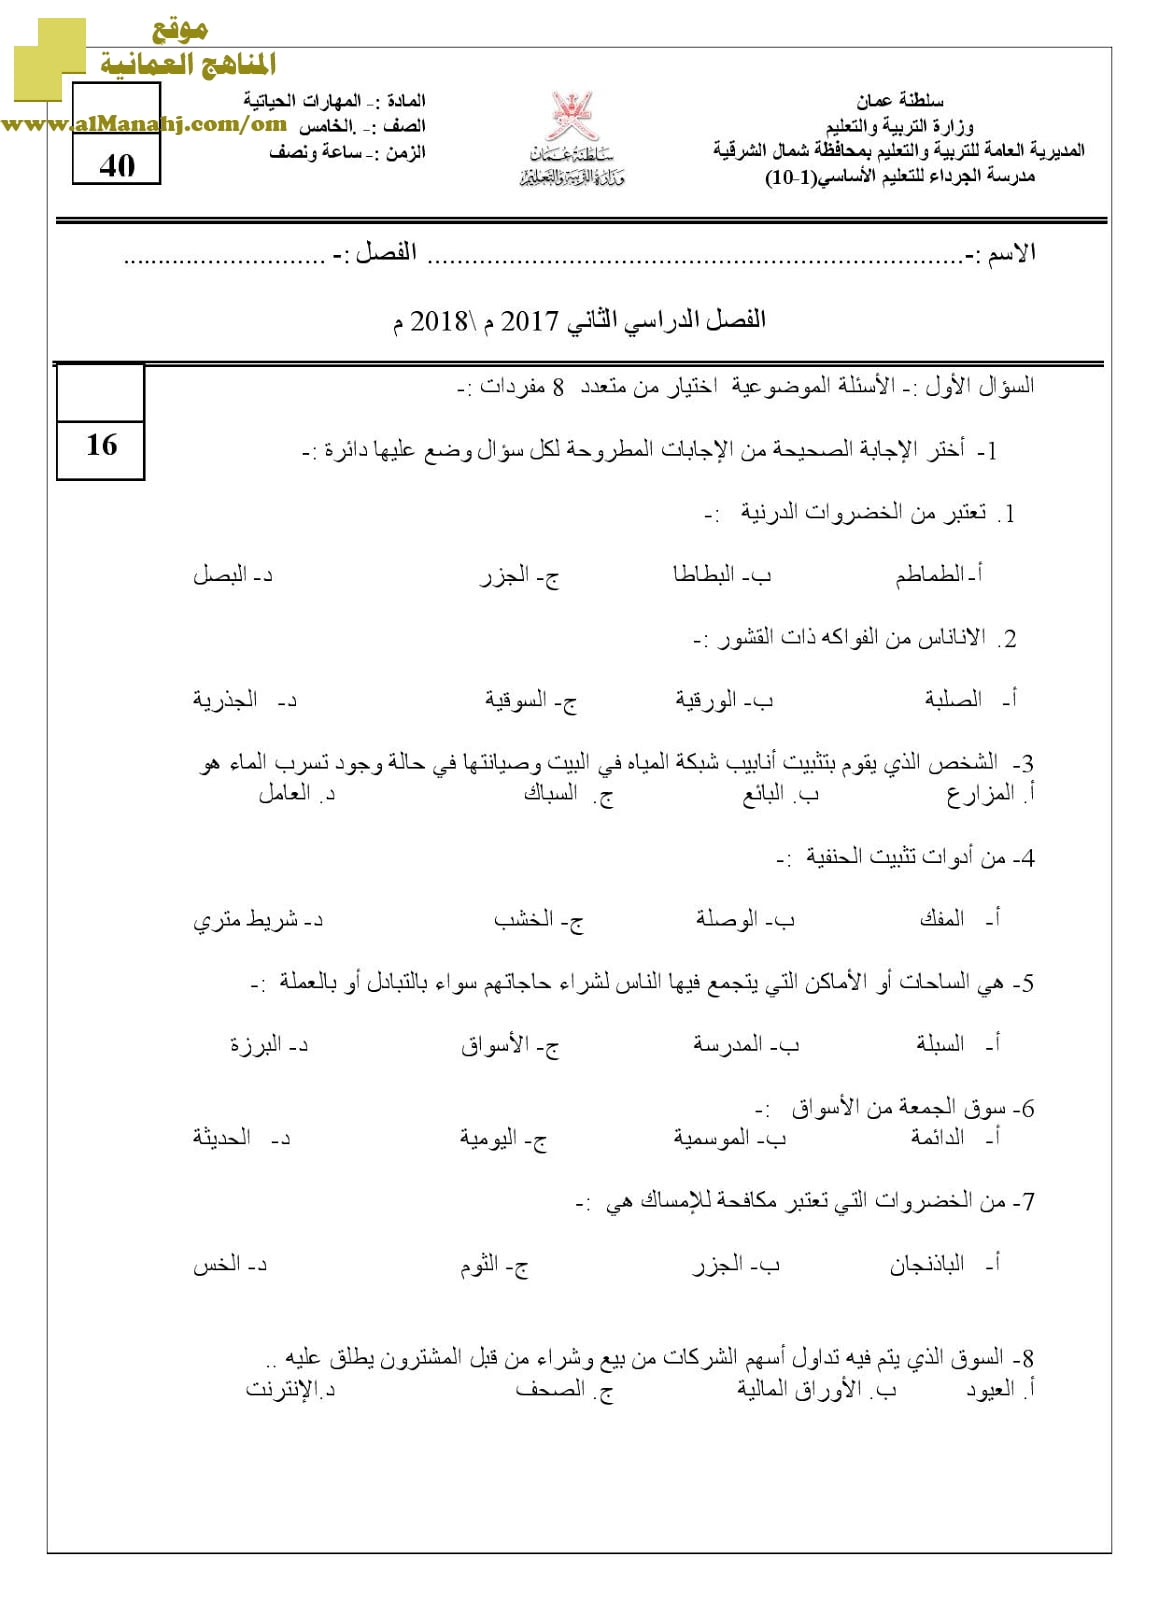 مجموعة اختبارات مهارات حياتية في محافظة شمال الشرقية للفصل الثاني (مهارات حياتية) الخامس